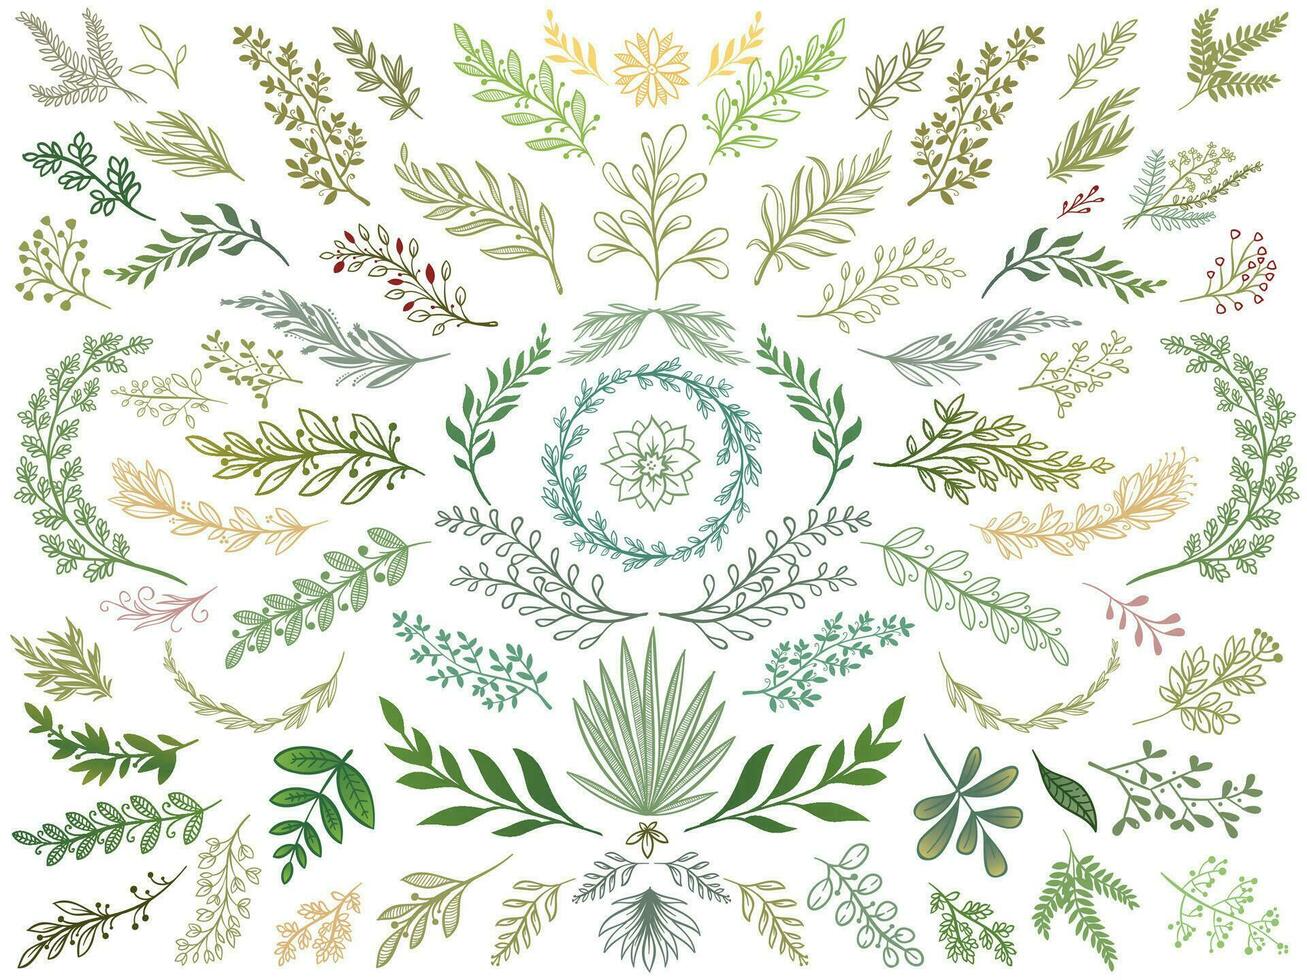 Dekor Blätter. Hand gezeichnet Grün Geäst, Natur Grün Pflanzen Blatt und dekorativ skizzieren Blätter isoliert Vektor Illustration einstellen